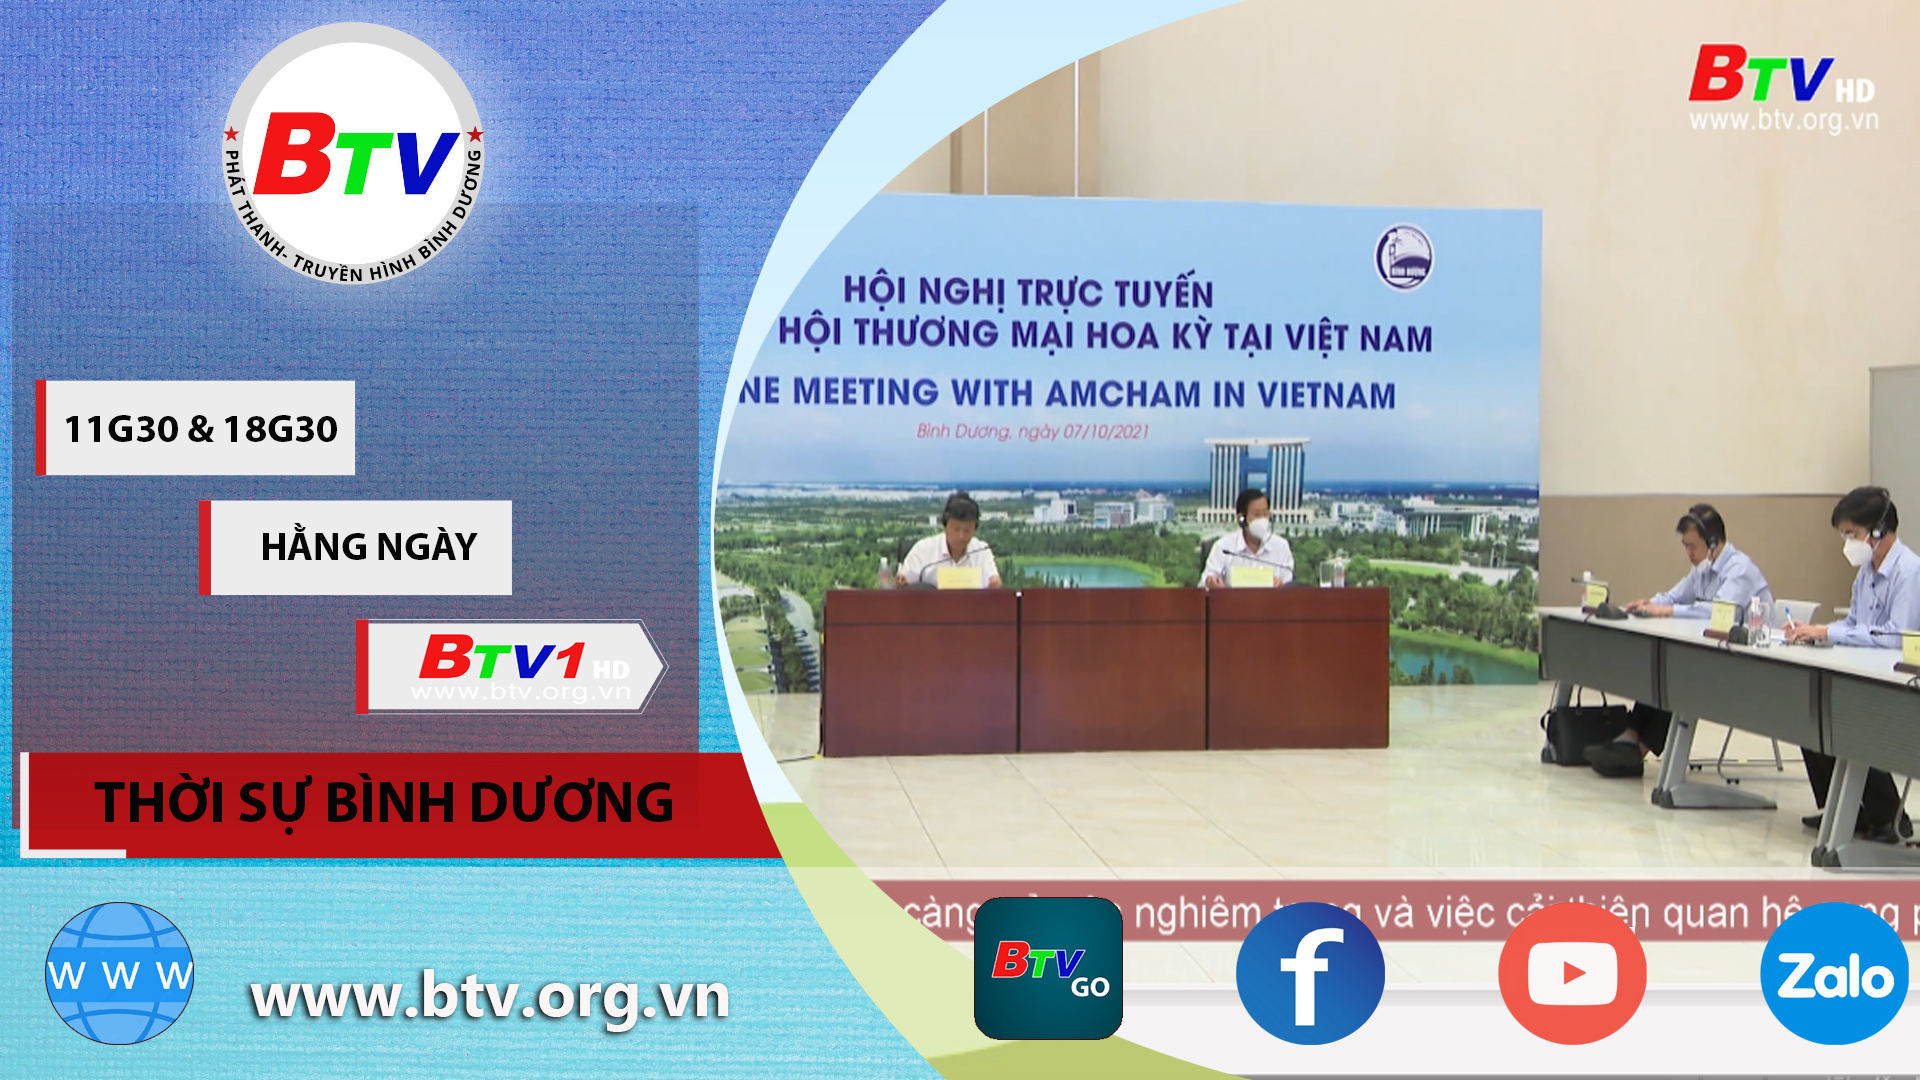 Hội nghị trực tuyến với Hiệp hội Thương mại Hoa kỳ tại Việt Nam